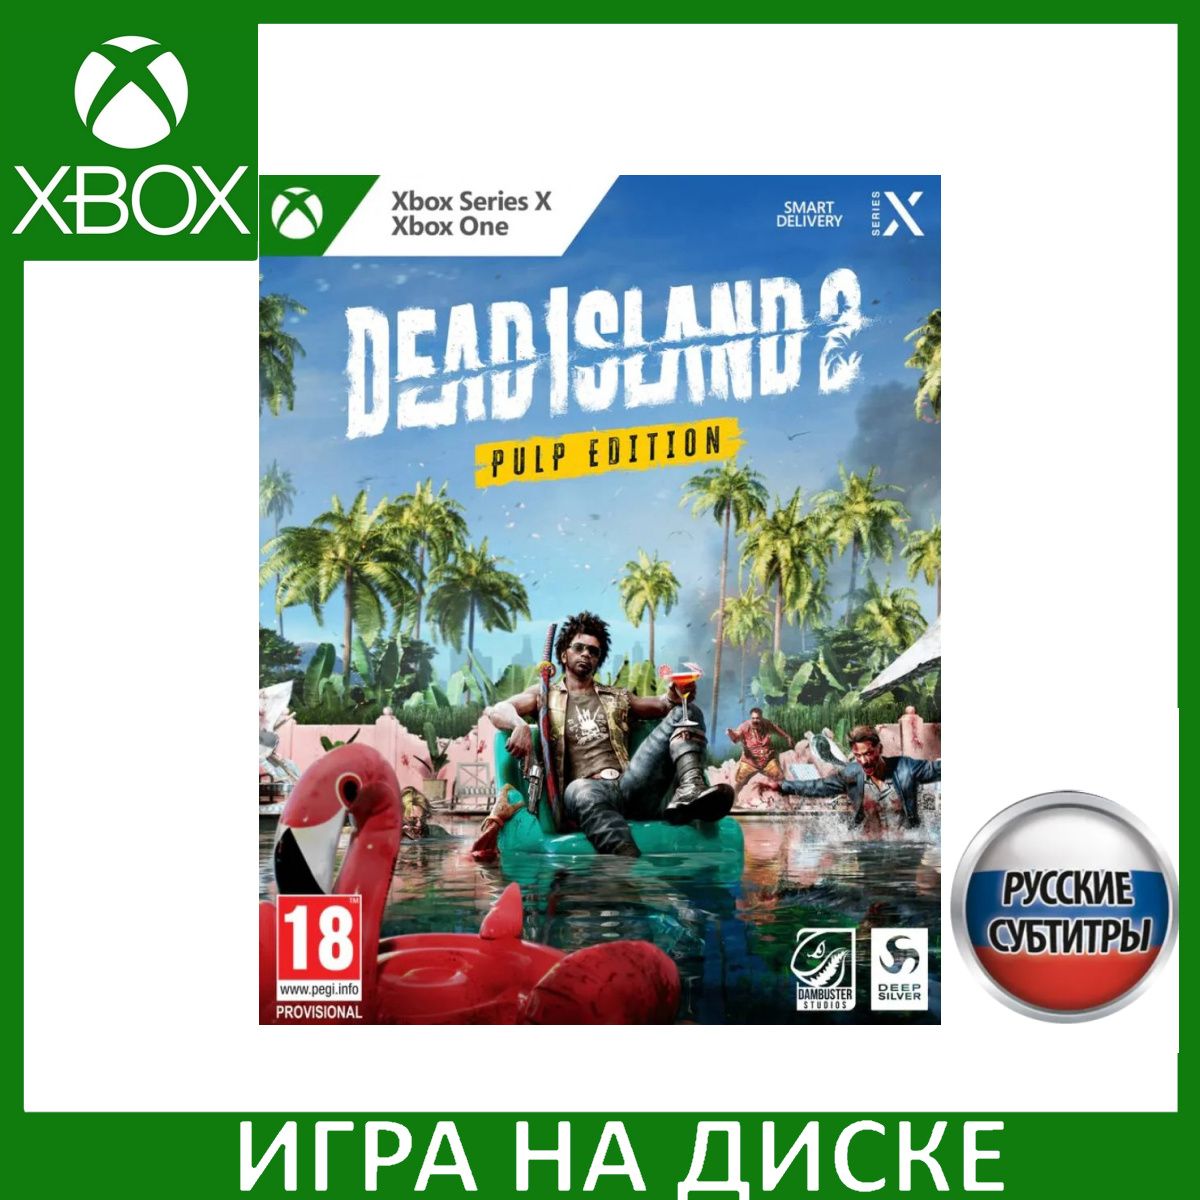 Игра в цене купить Island (Xbox Dead (1331079050) Русские One, Edition 2 субтитры) низкой доставкой с по Series, интернет-магазине Pulp OZON Xbox